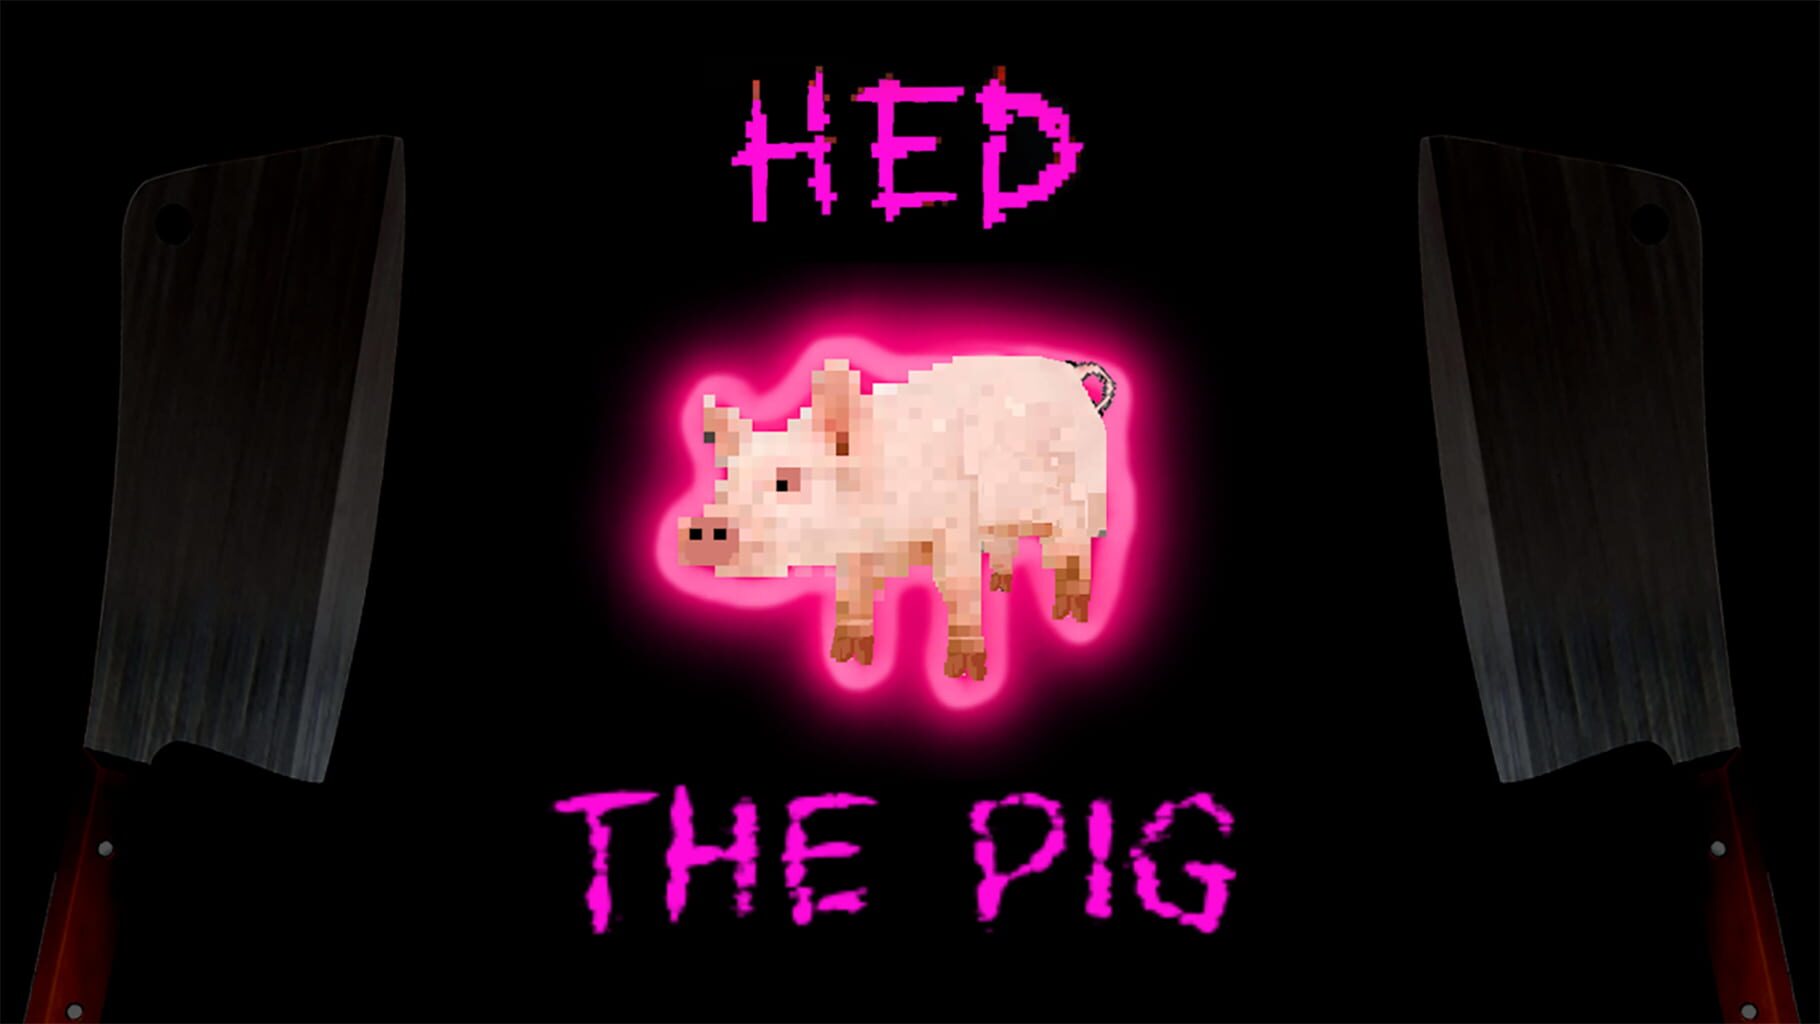 Hed the Pig artwork